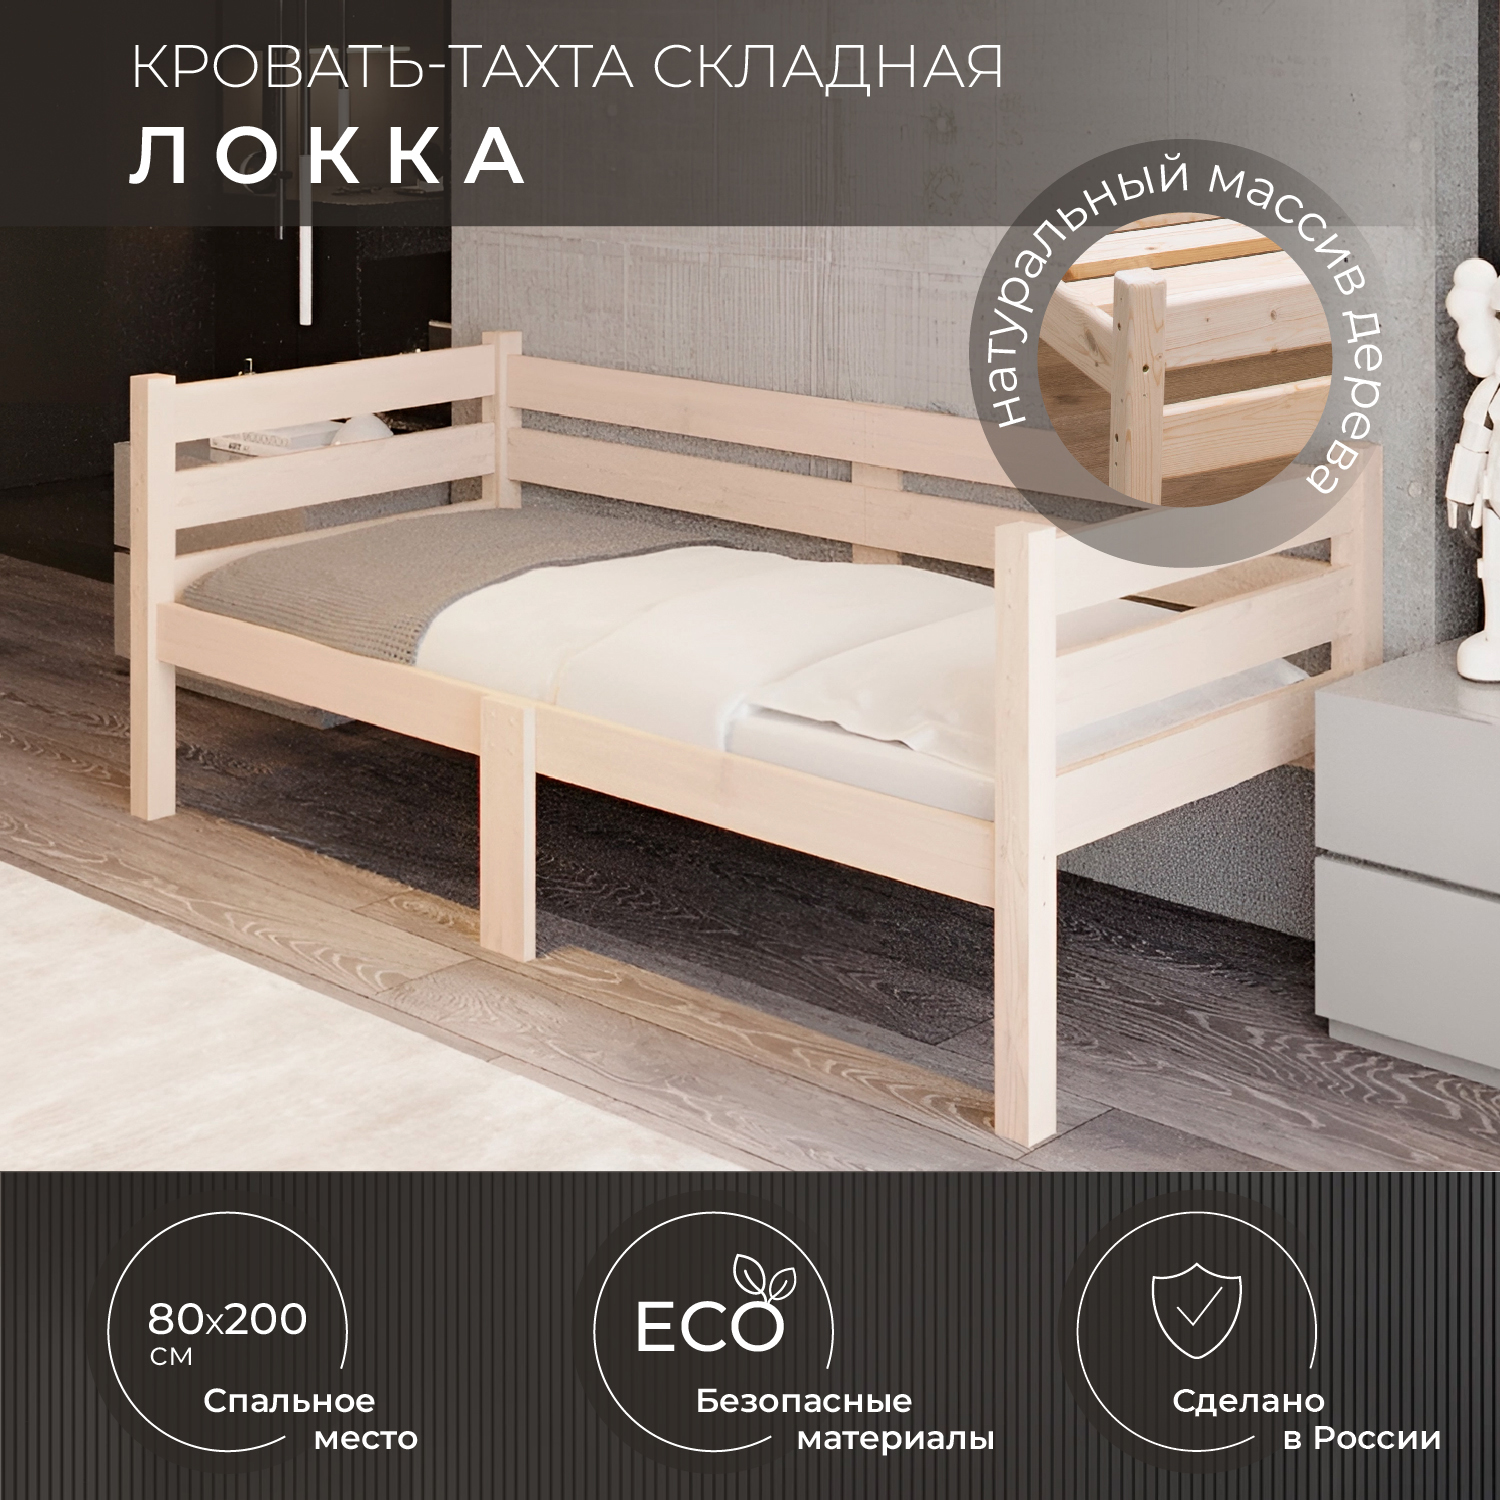 Кровать односпальная Новирон Локка 80х200 см складная бежевый